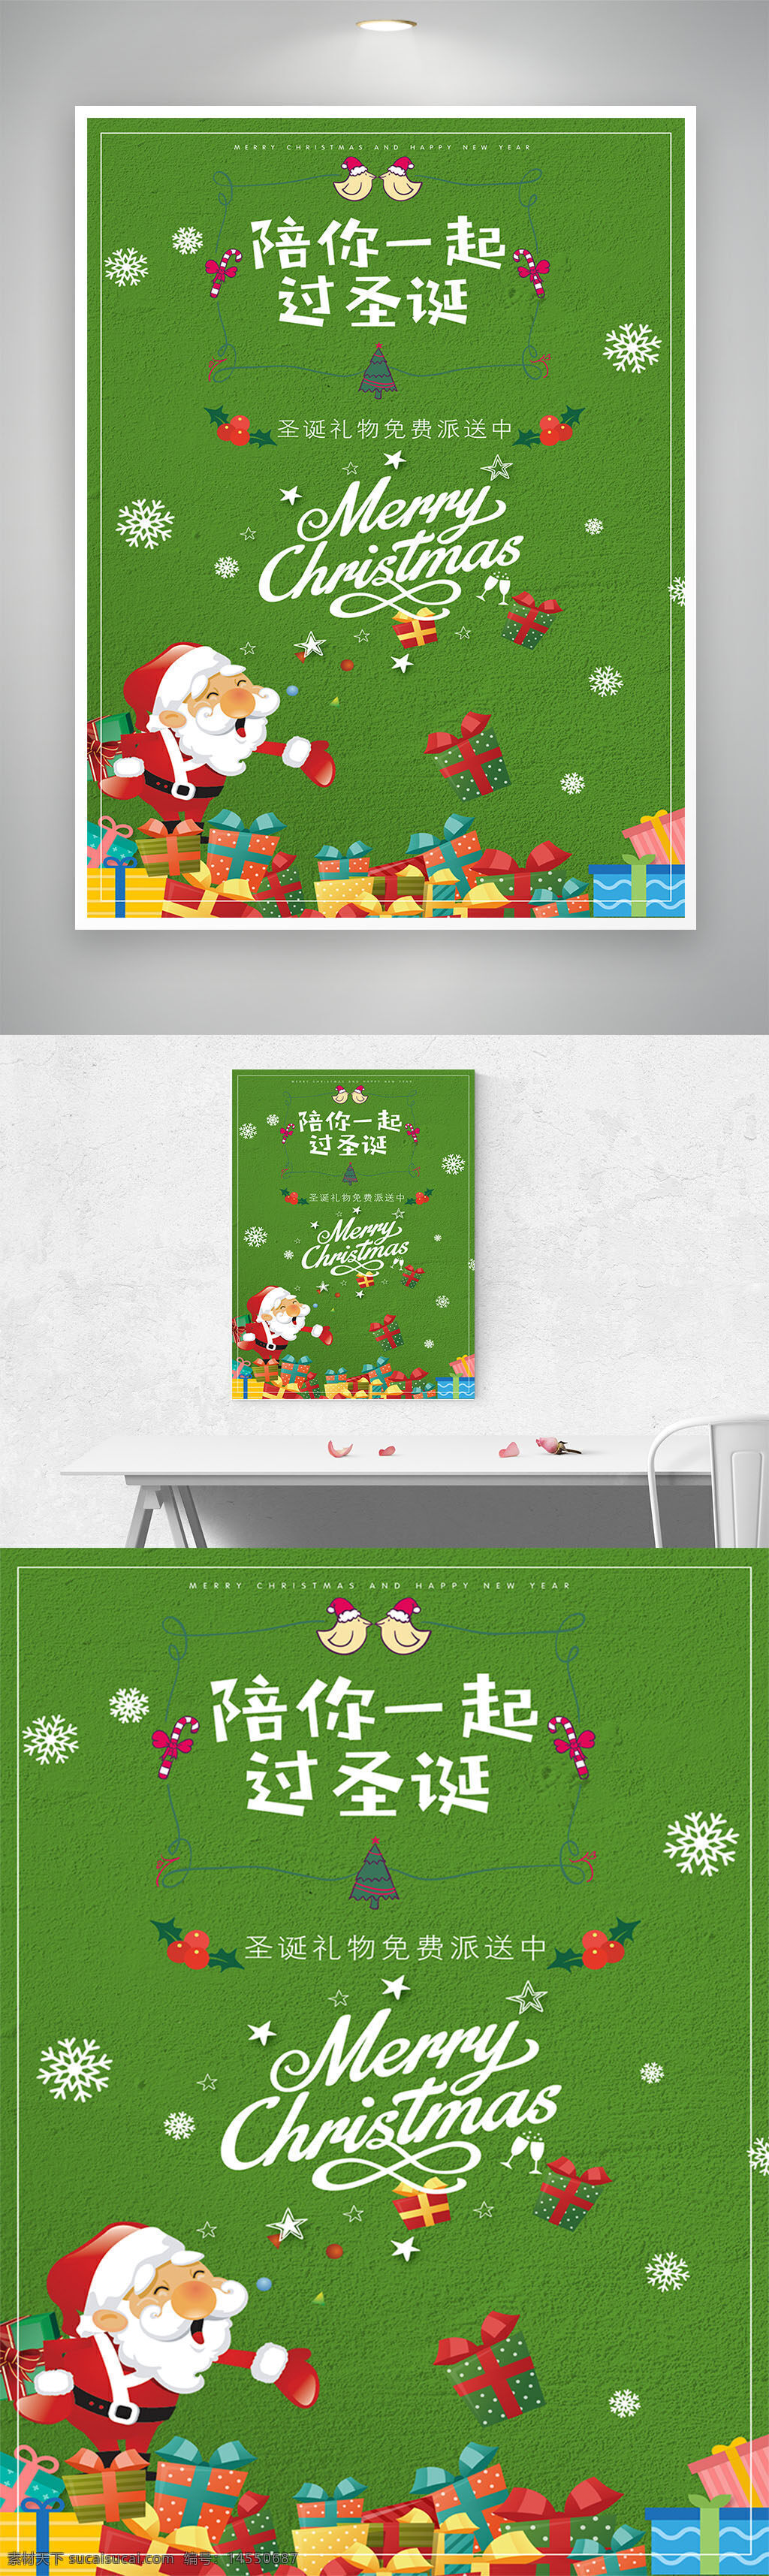 陪你 一起过圣诞 绿色 卡通 扁平化 圣诞节 海报